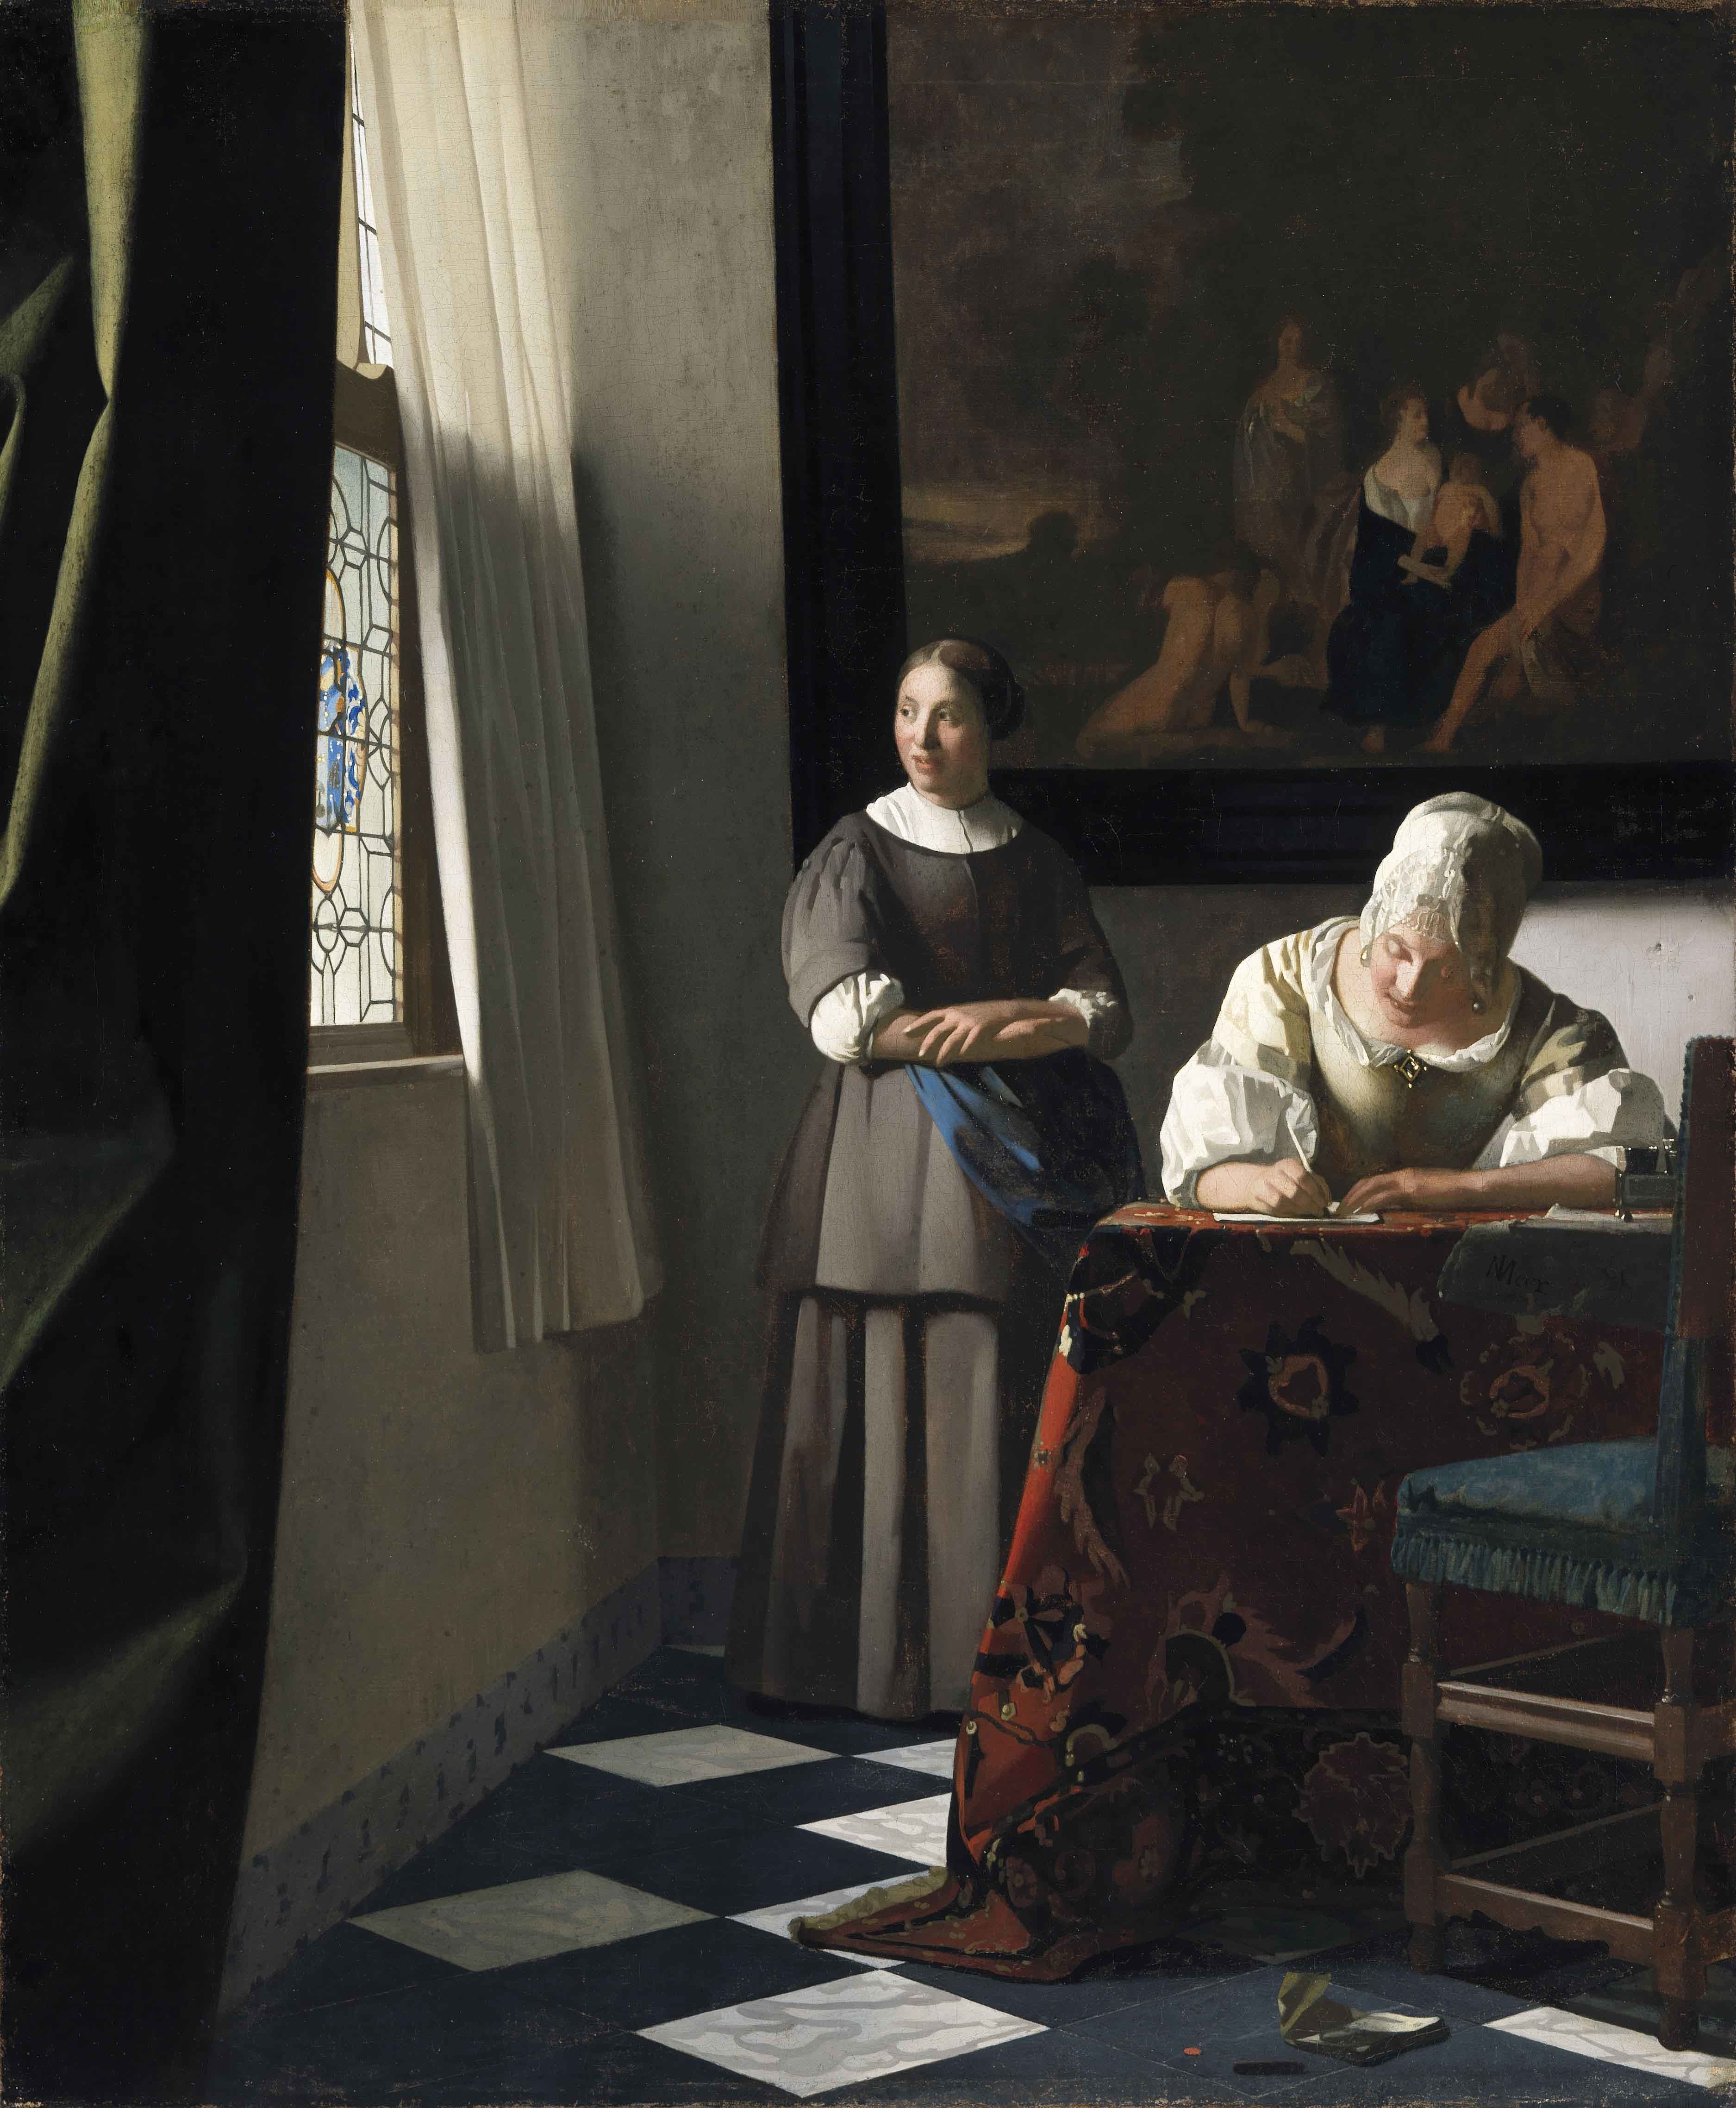 Mujer escribiendo una carta y criada de Johannes Vermeer